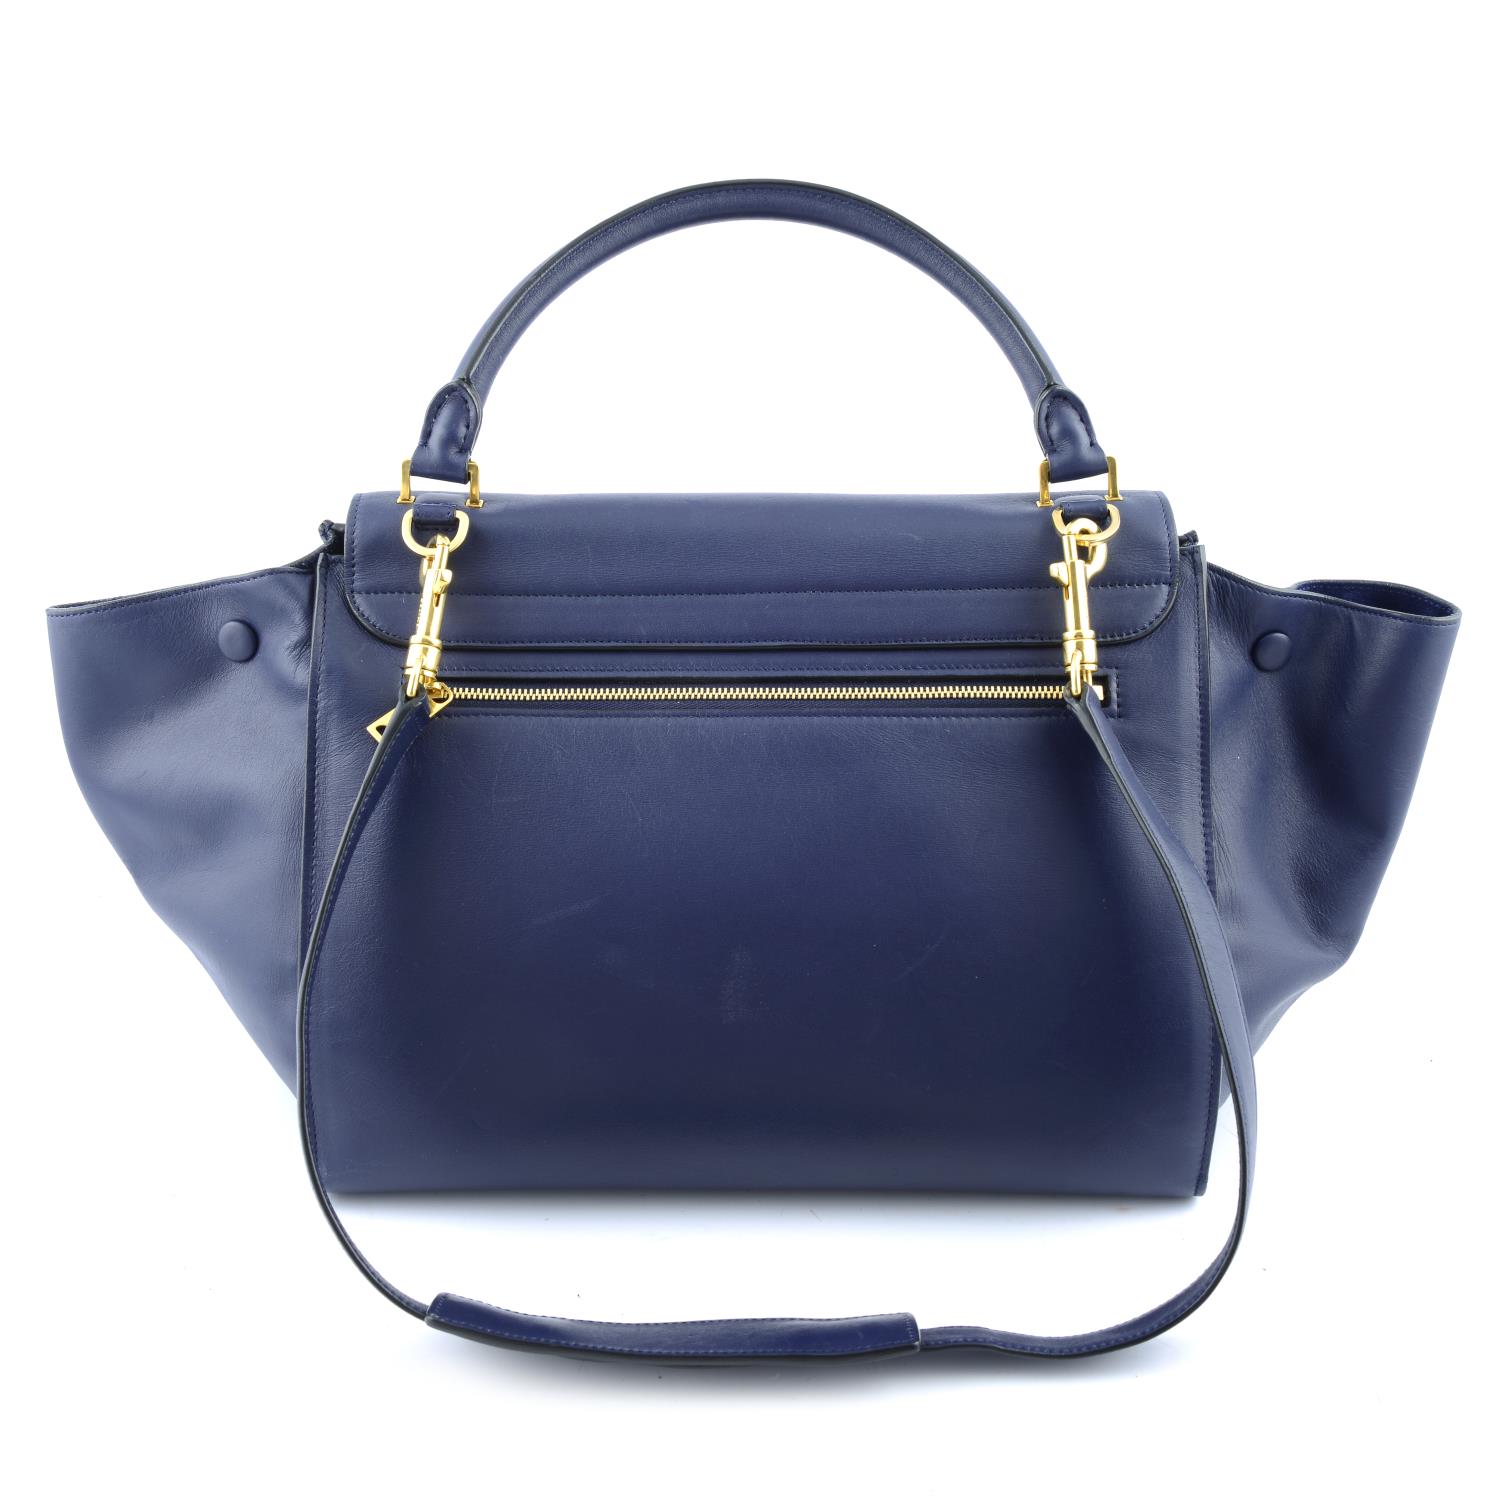 CÉLINE - a blue leather Trapeze handbag. - Image 2 of 4